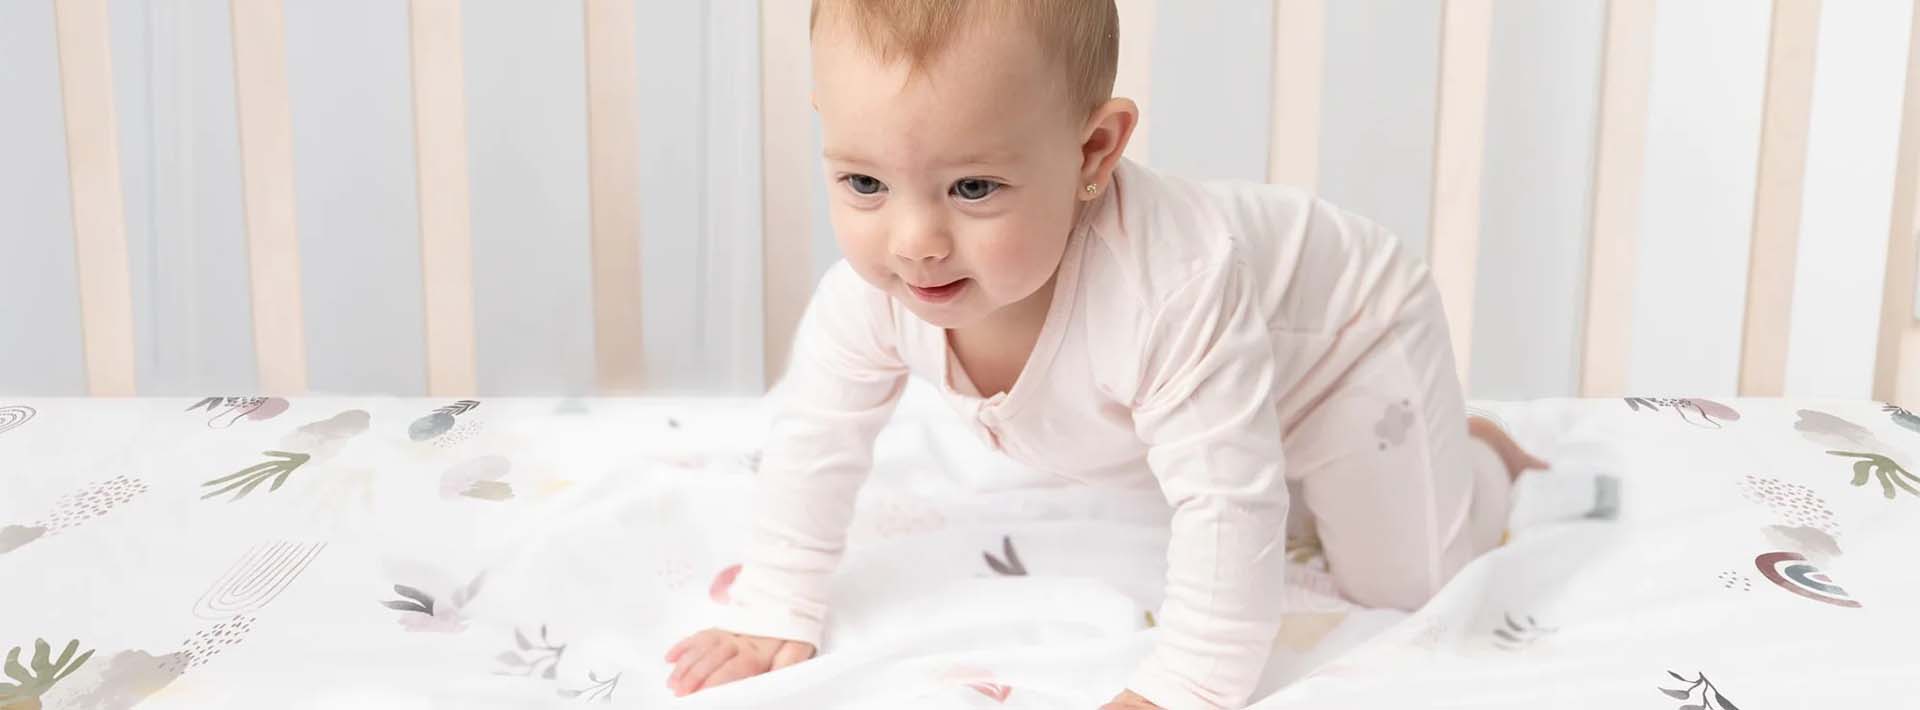 Spectra 嬰兒護理産品隨着寶寶漸漸成長，日常護理的需要也會不同，可以先為寶寶準備枕頭、防抓手套、水肩、睡袋、嬰兒牙刷、餵食碗等等